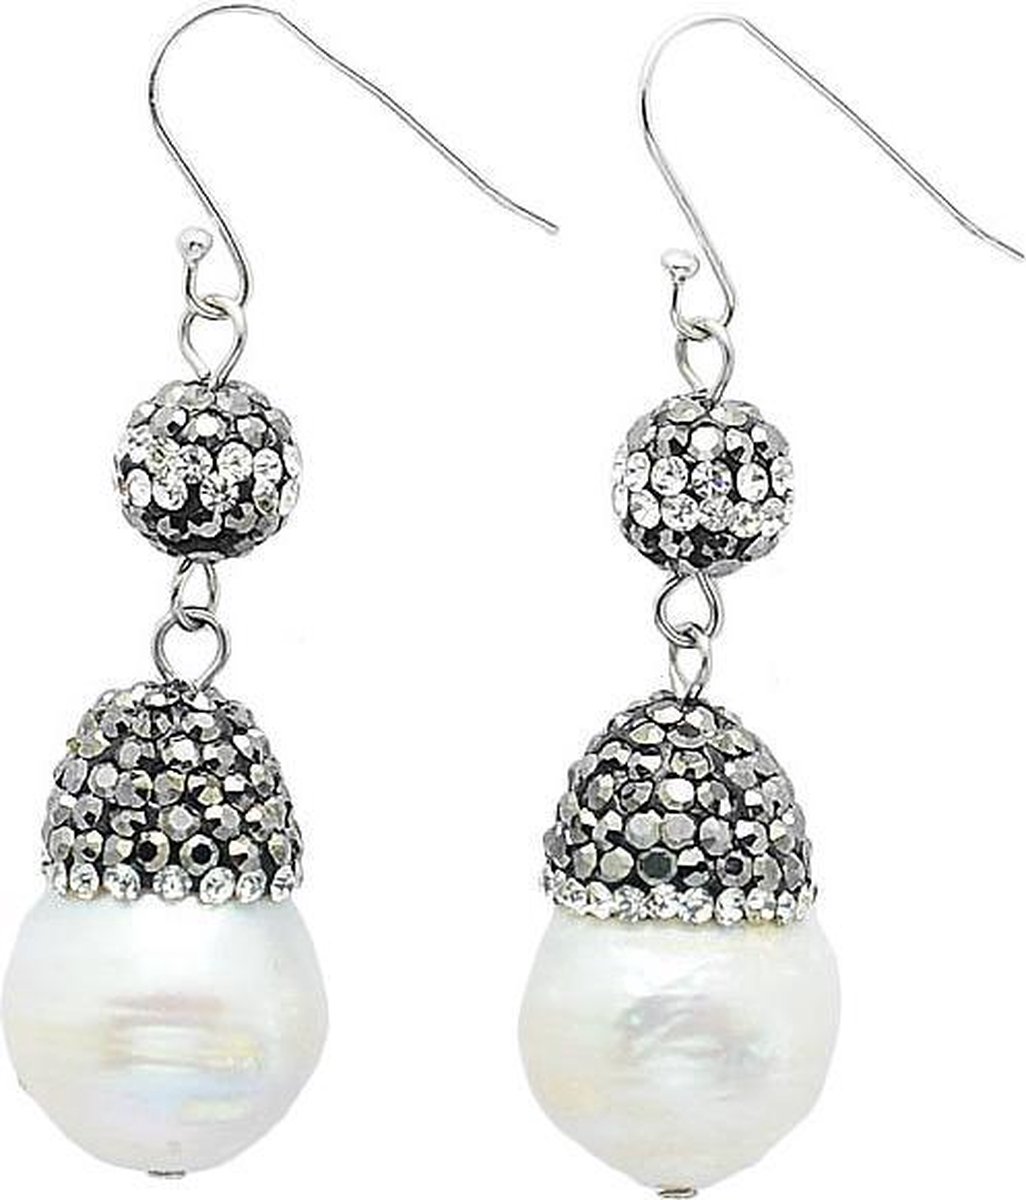 Zoetwater parel oorbellen Bright Pearl Dangling Nut - oorhangers - echte parels - sterling zilver (925)- wit - zwart - stras steentjes